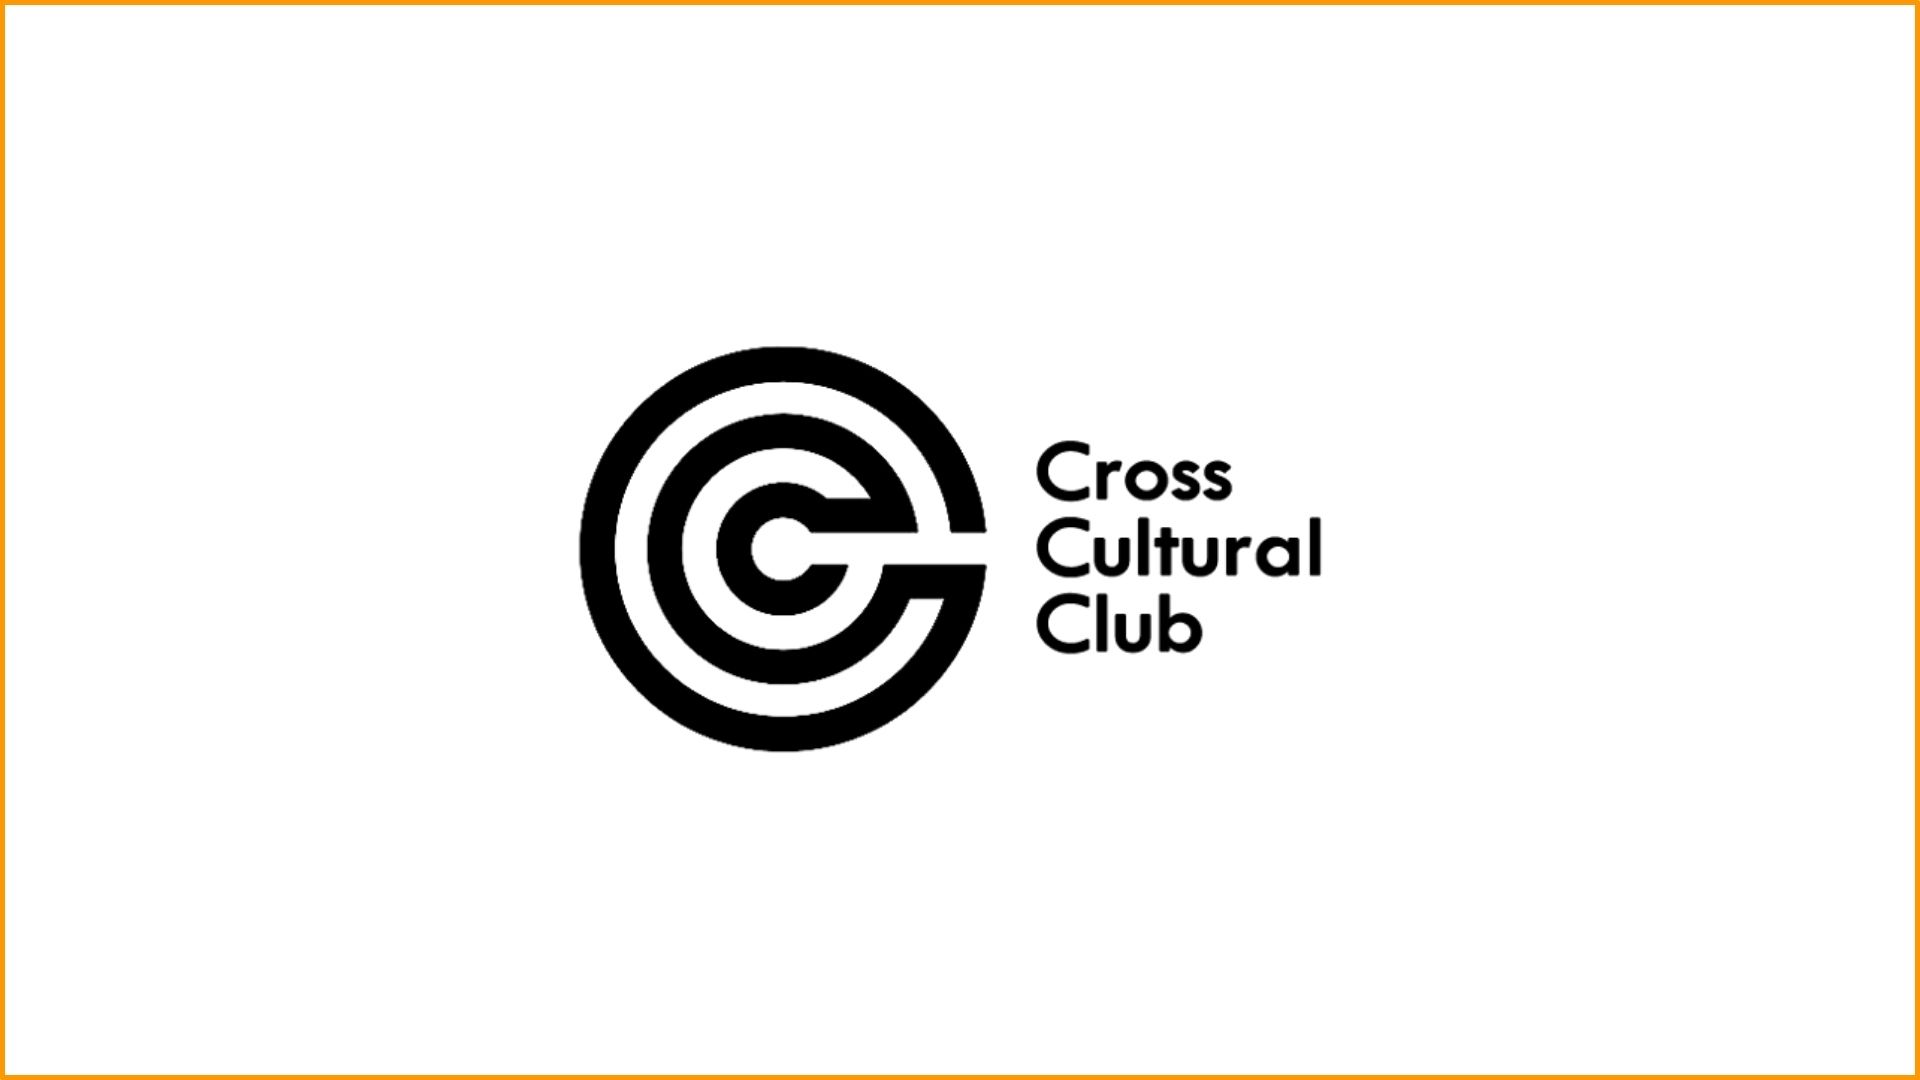 Cross Cultural Club